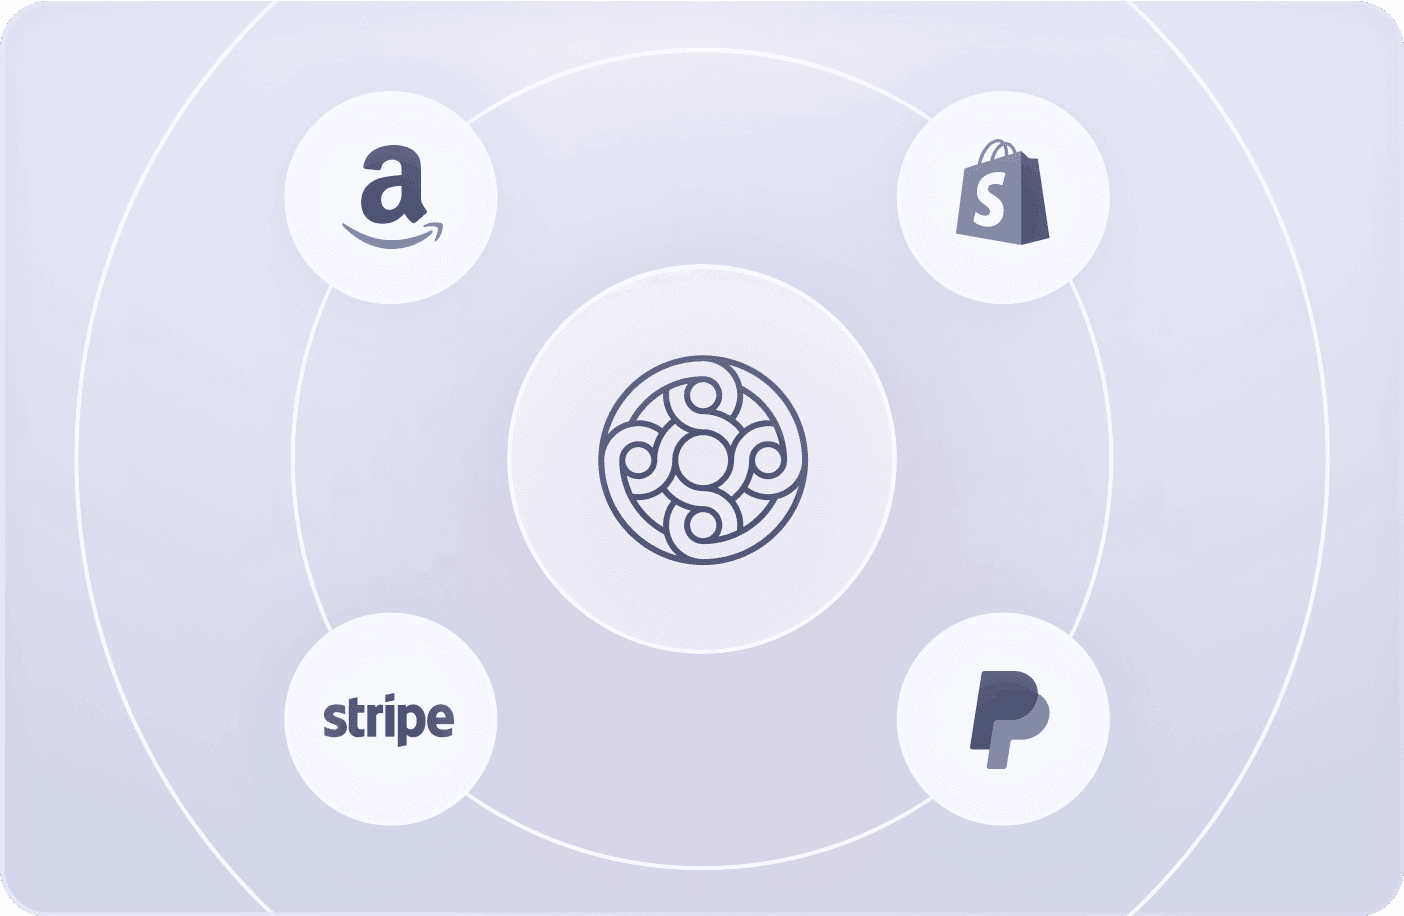 Amazon, Stripe, Shopify, and Paypal logos orbiting around the Mercury logo